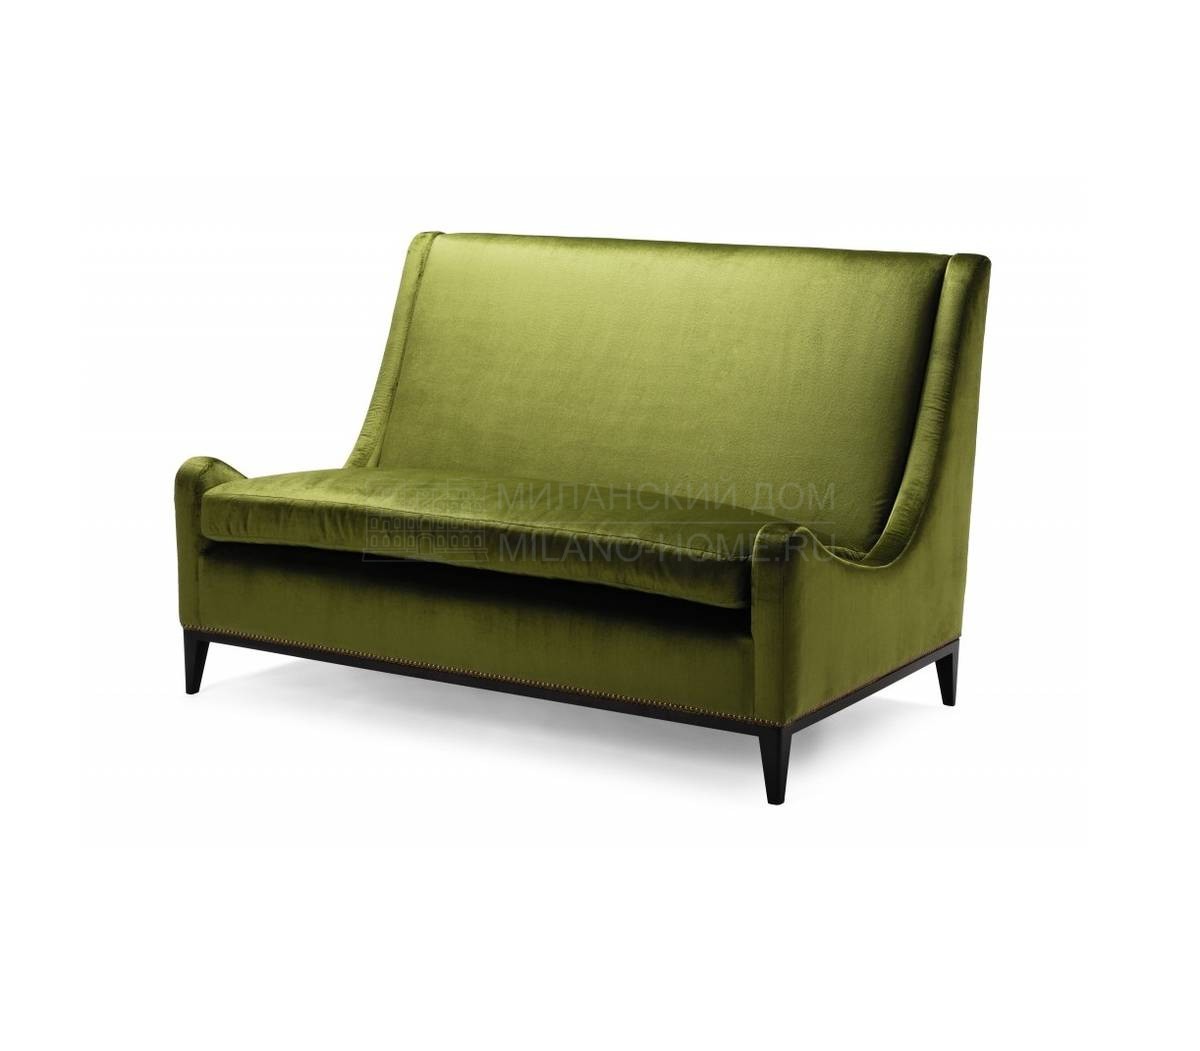 Прямой диван Sloop Two Seat Sofa из Великобритании фабрики AMY SOMERVILLE